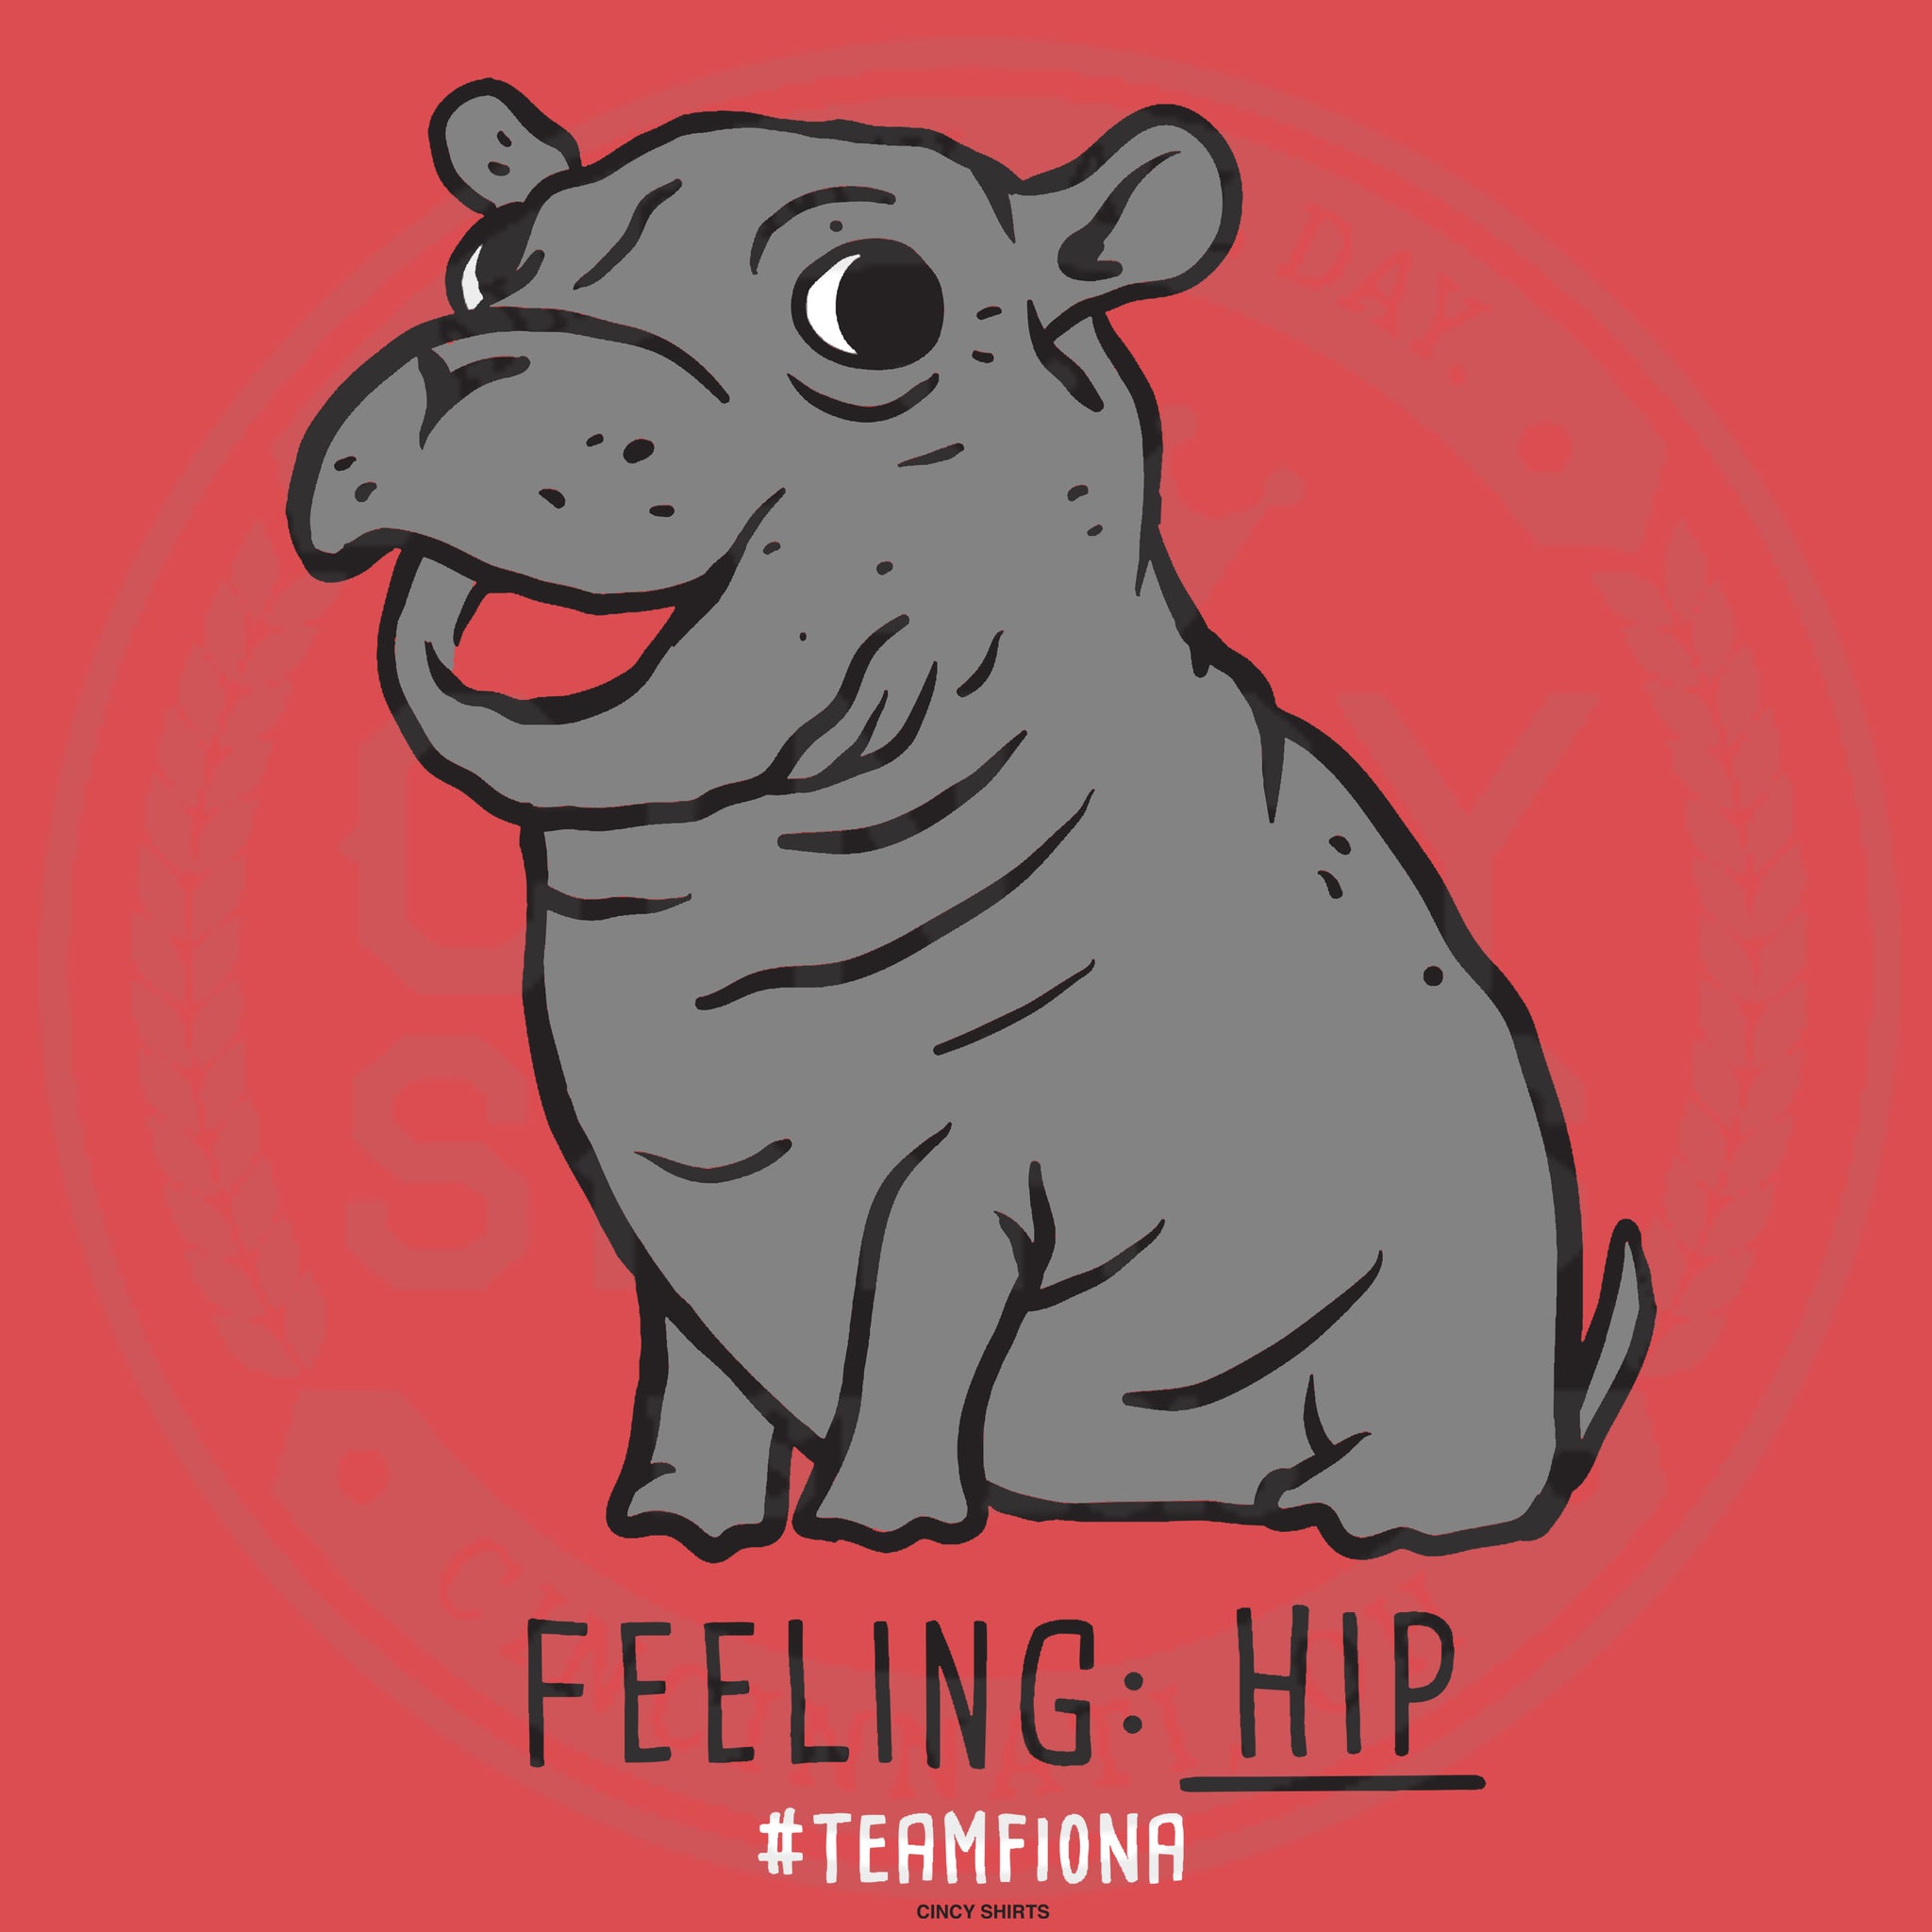 Fiona gets custom Cincinnati Hippos jersey